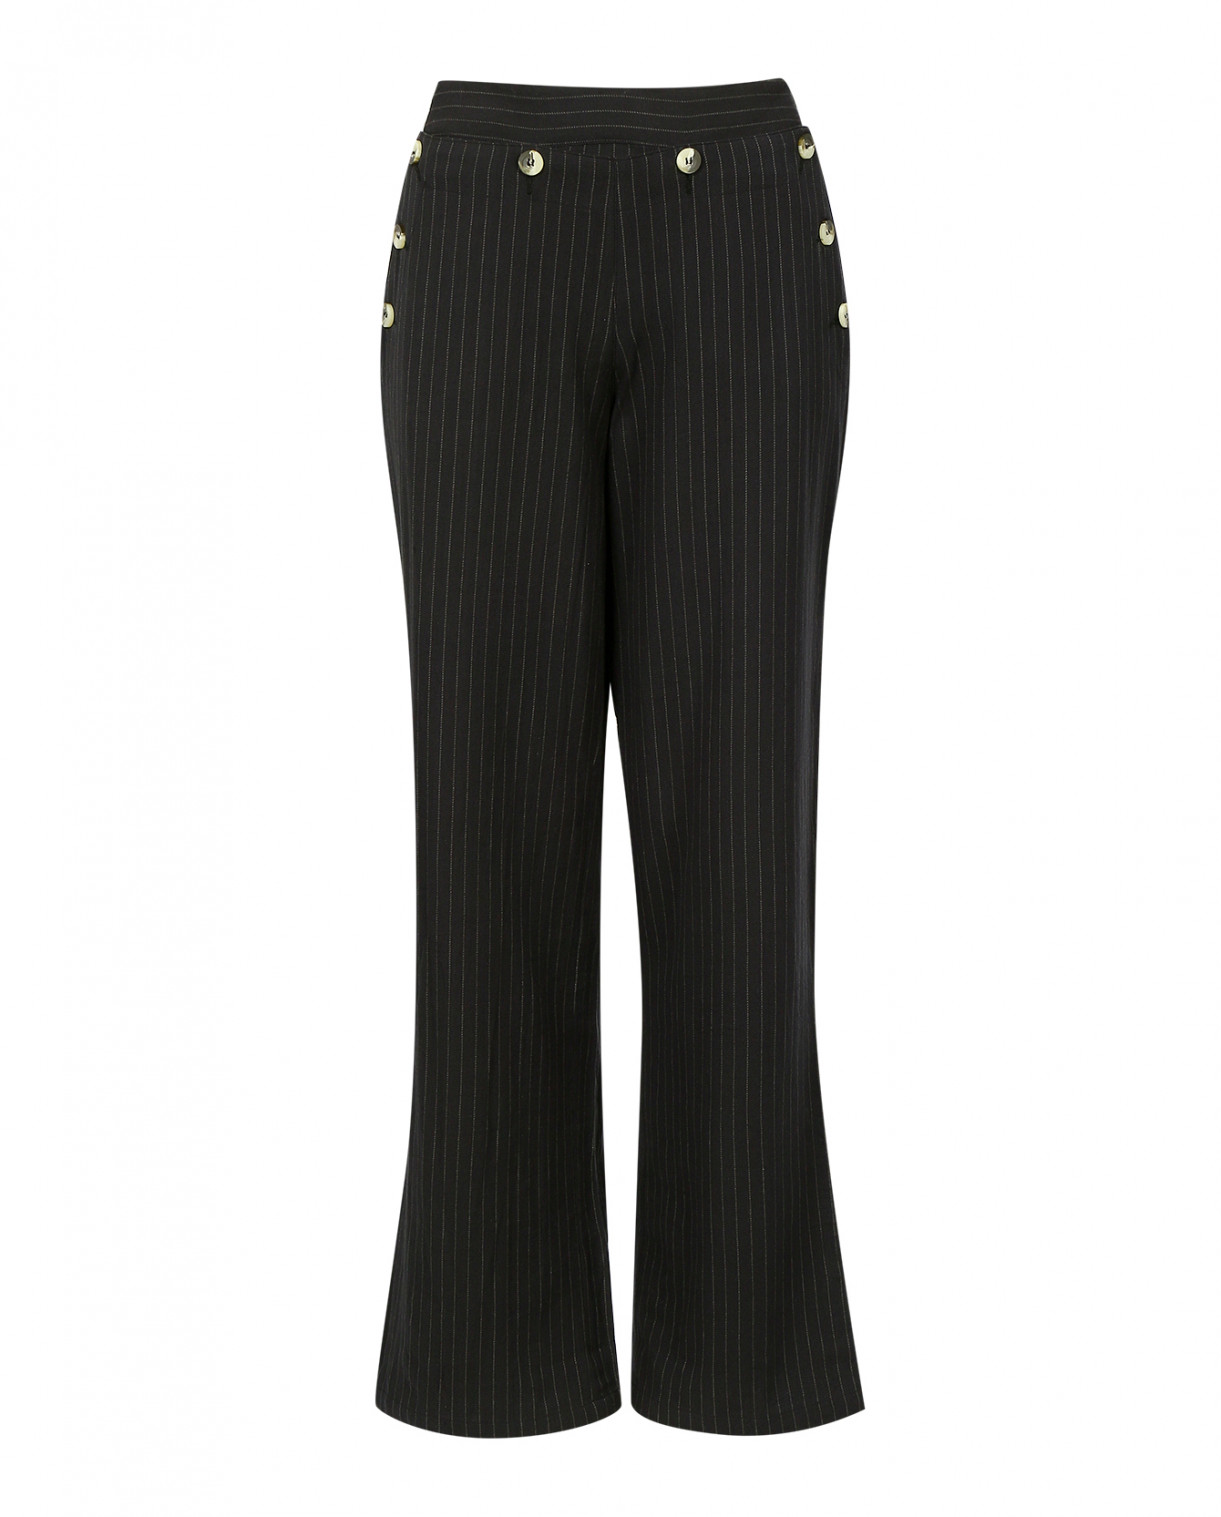 Прямые брюки из хлопка с принтом "полоска" Leon&Harper  –  Общий вид  – Цвет:  Серый